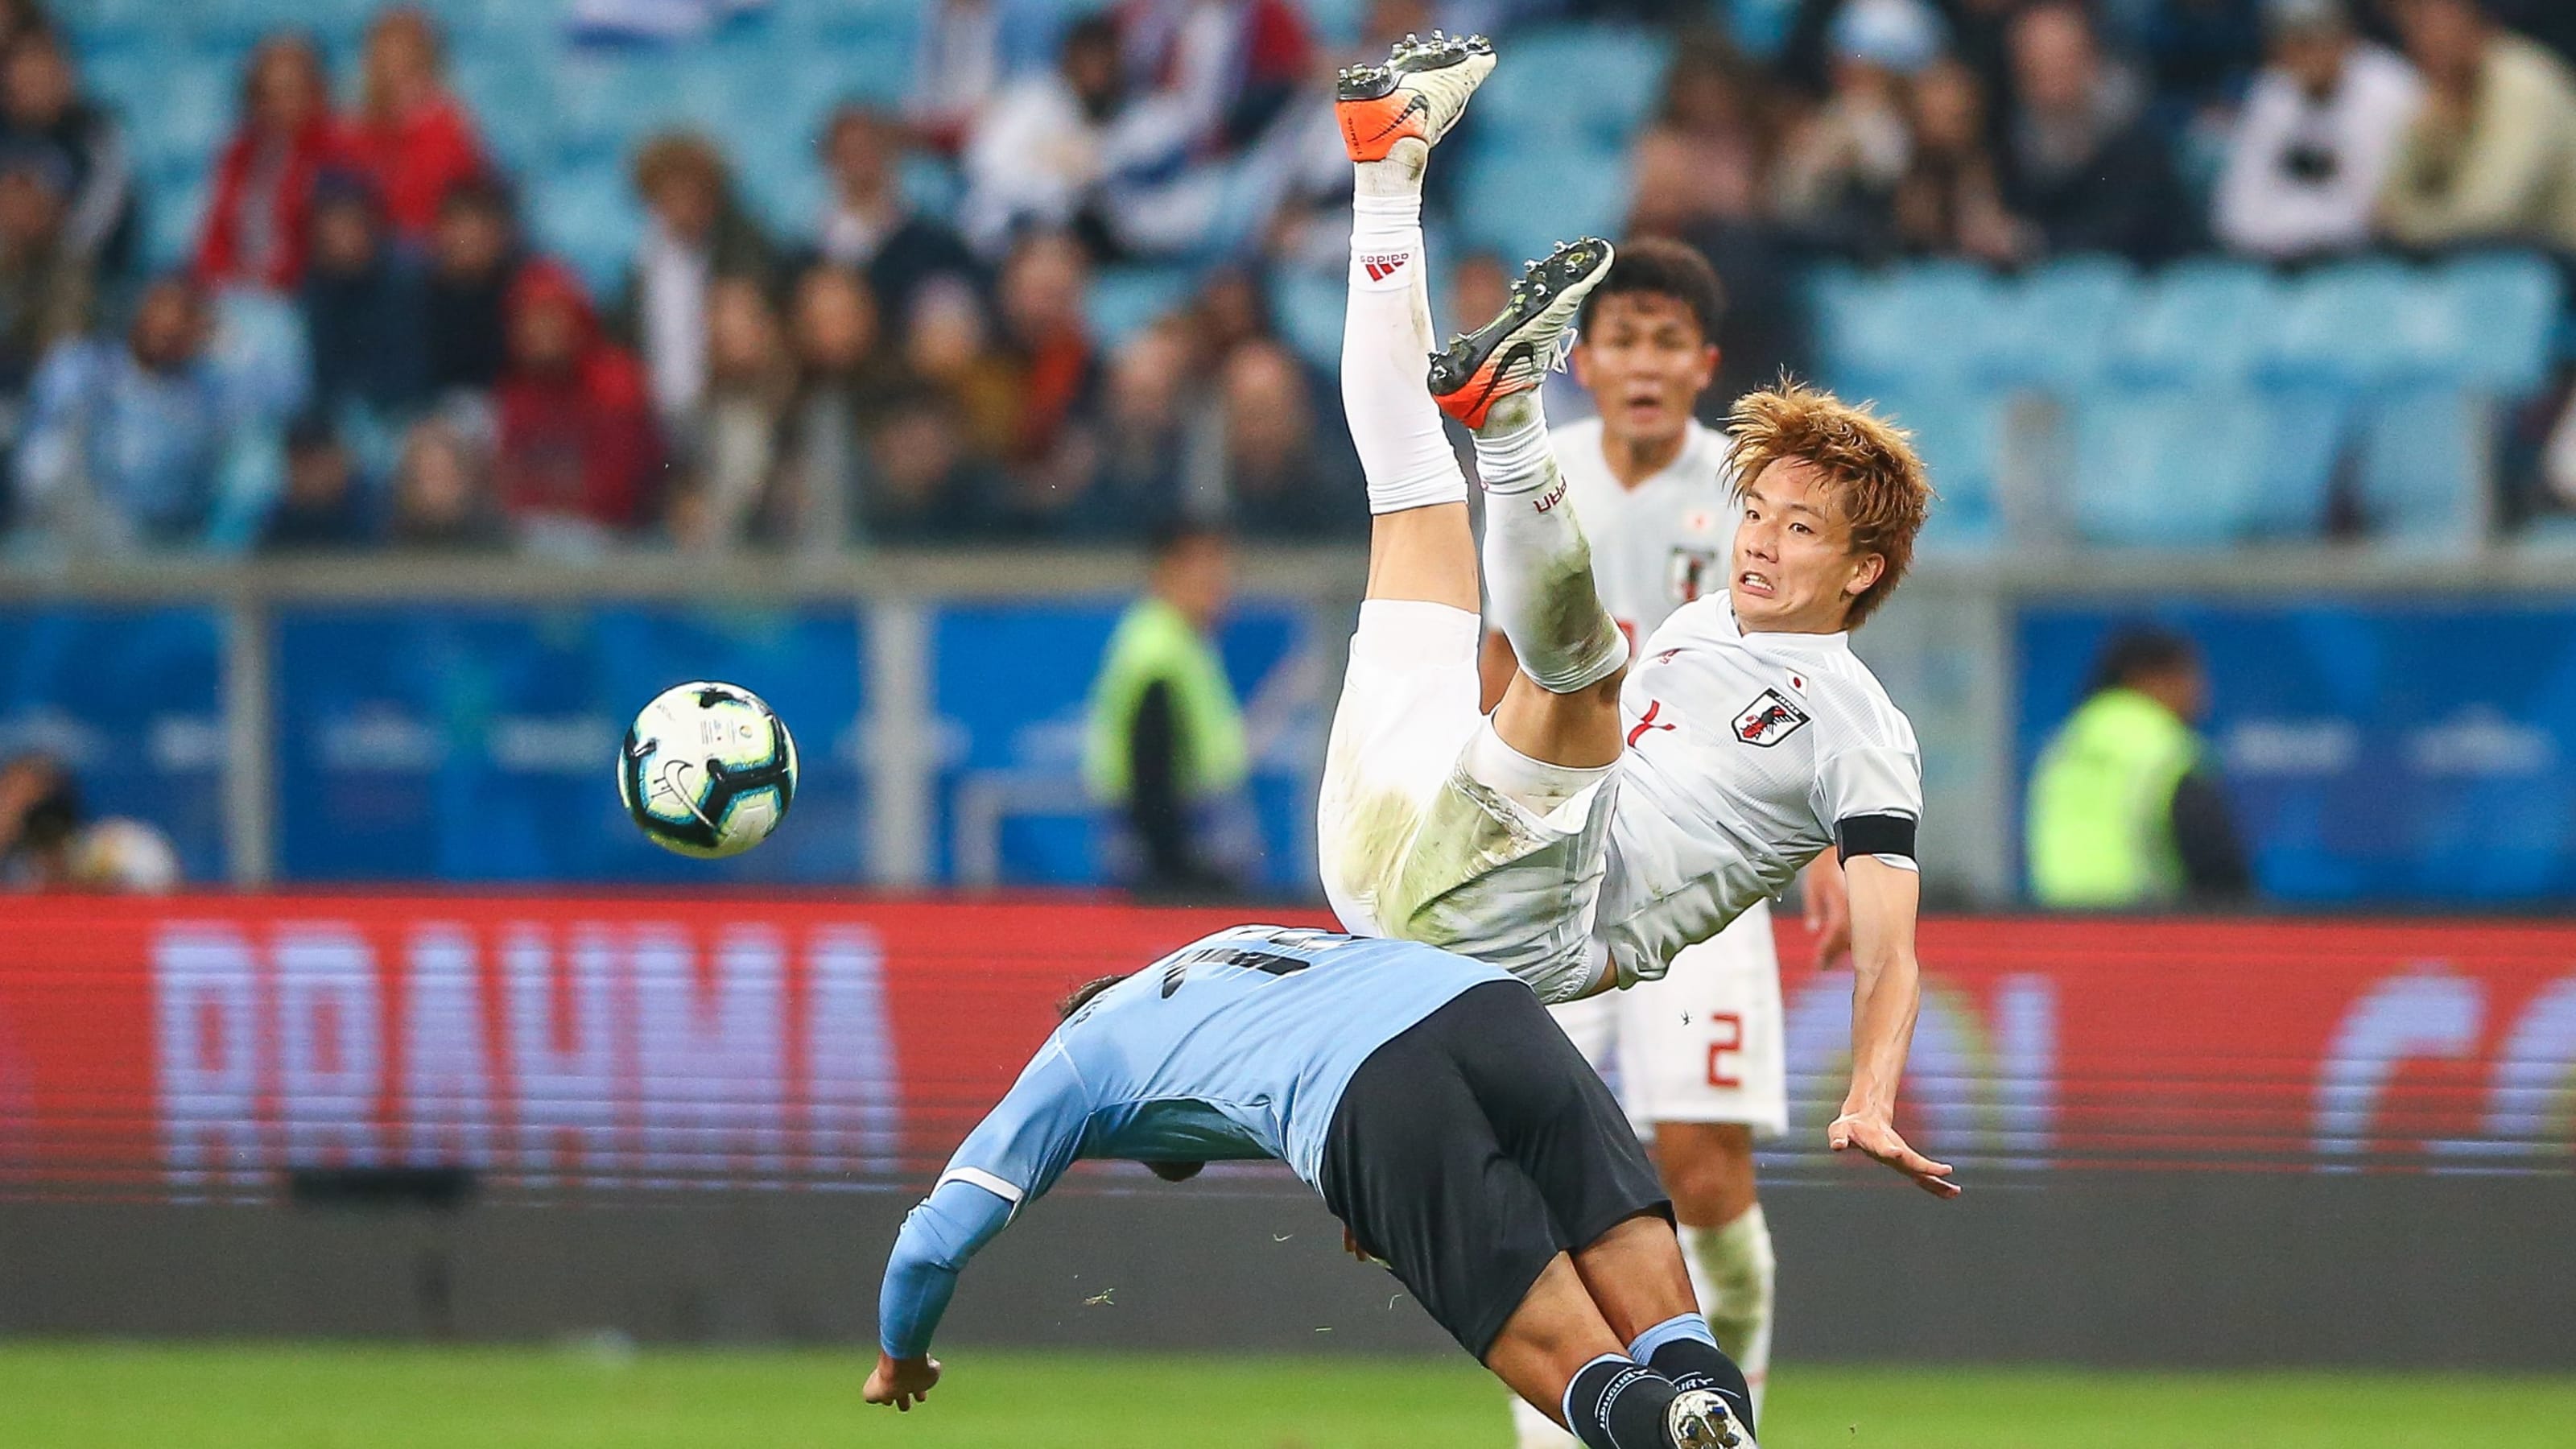 サッカー 日本代表 板倉滉は 21シーズンもfcフローニンゲンへレンタル移籍